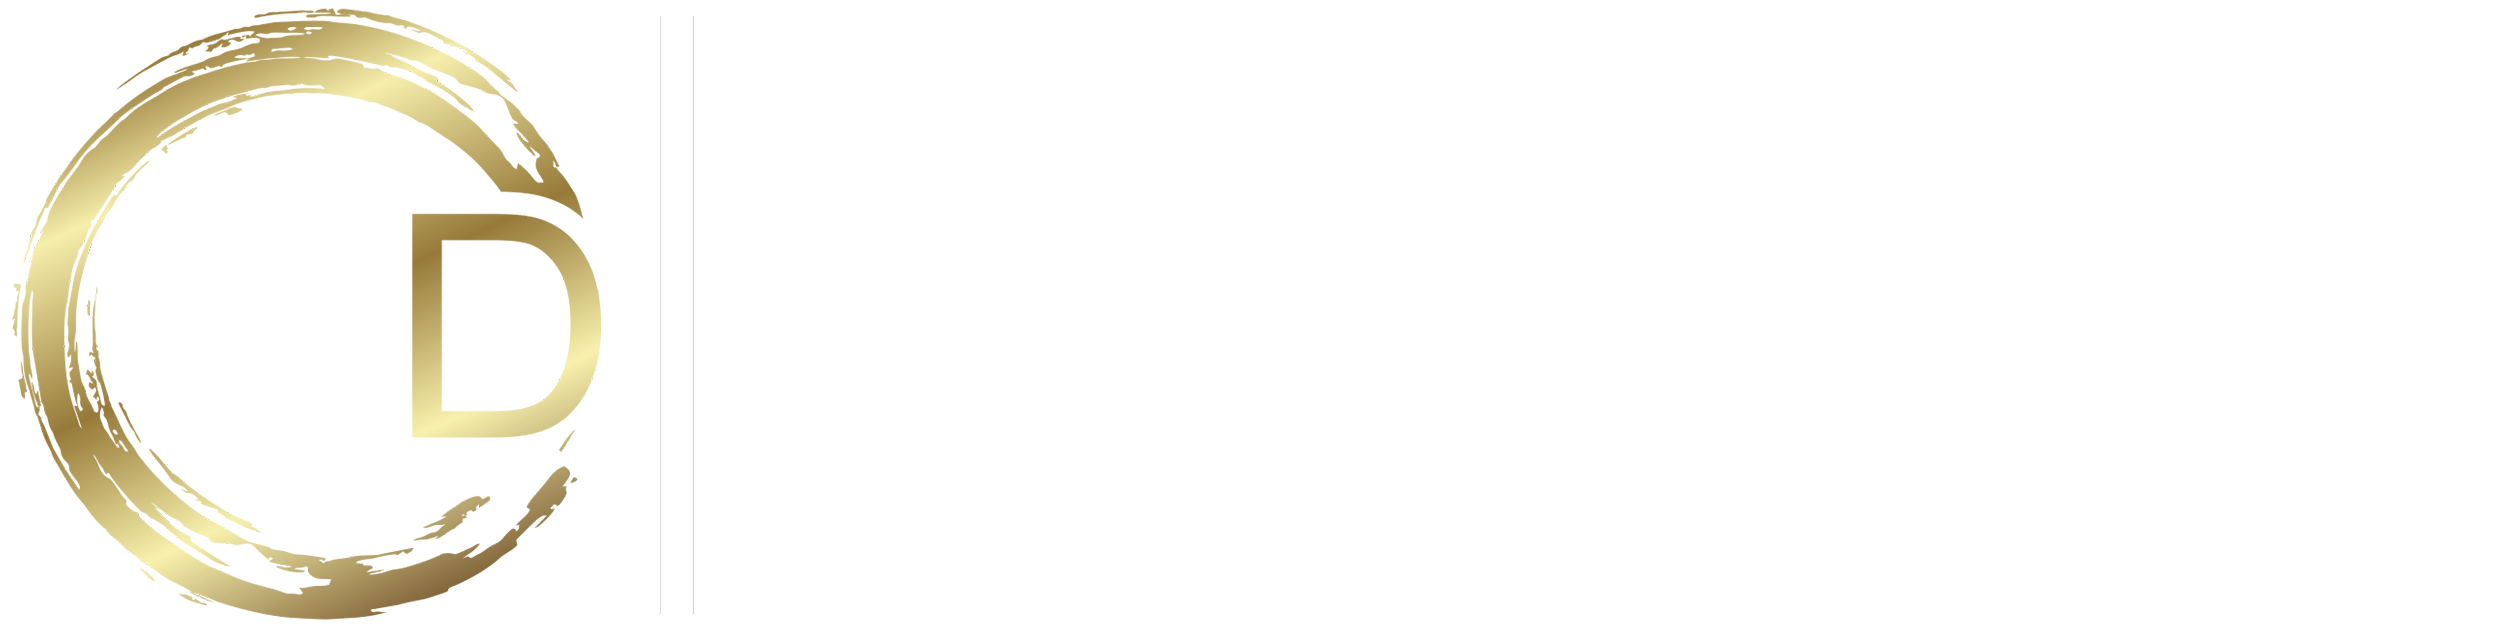 Days Global Advisors